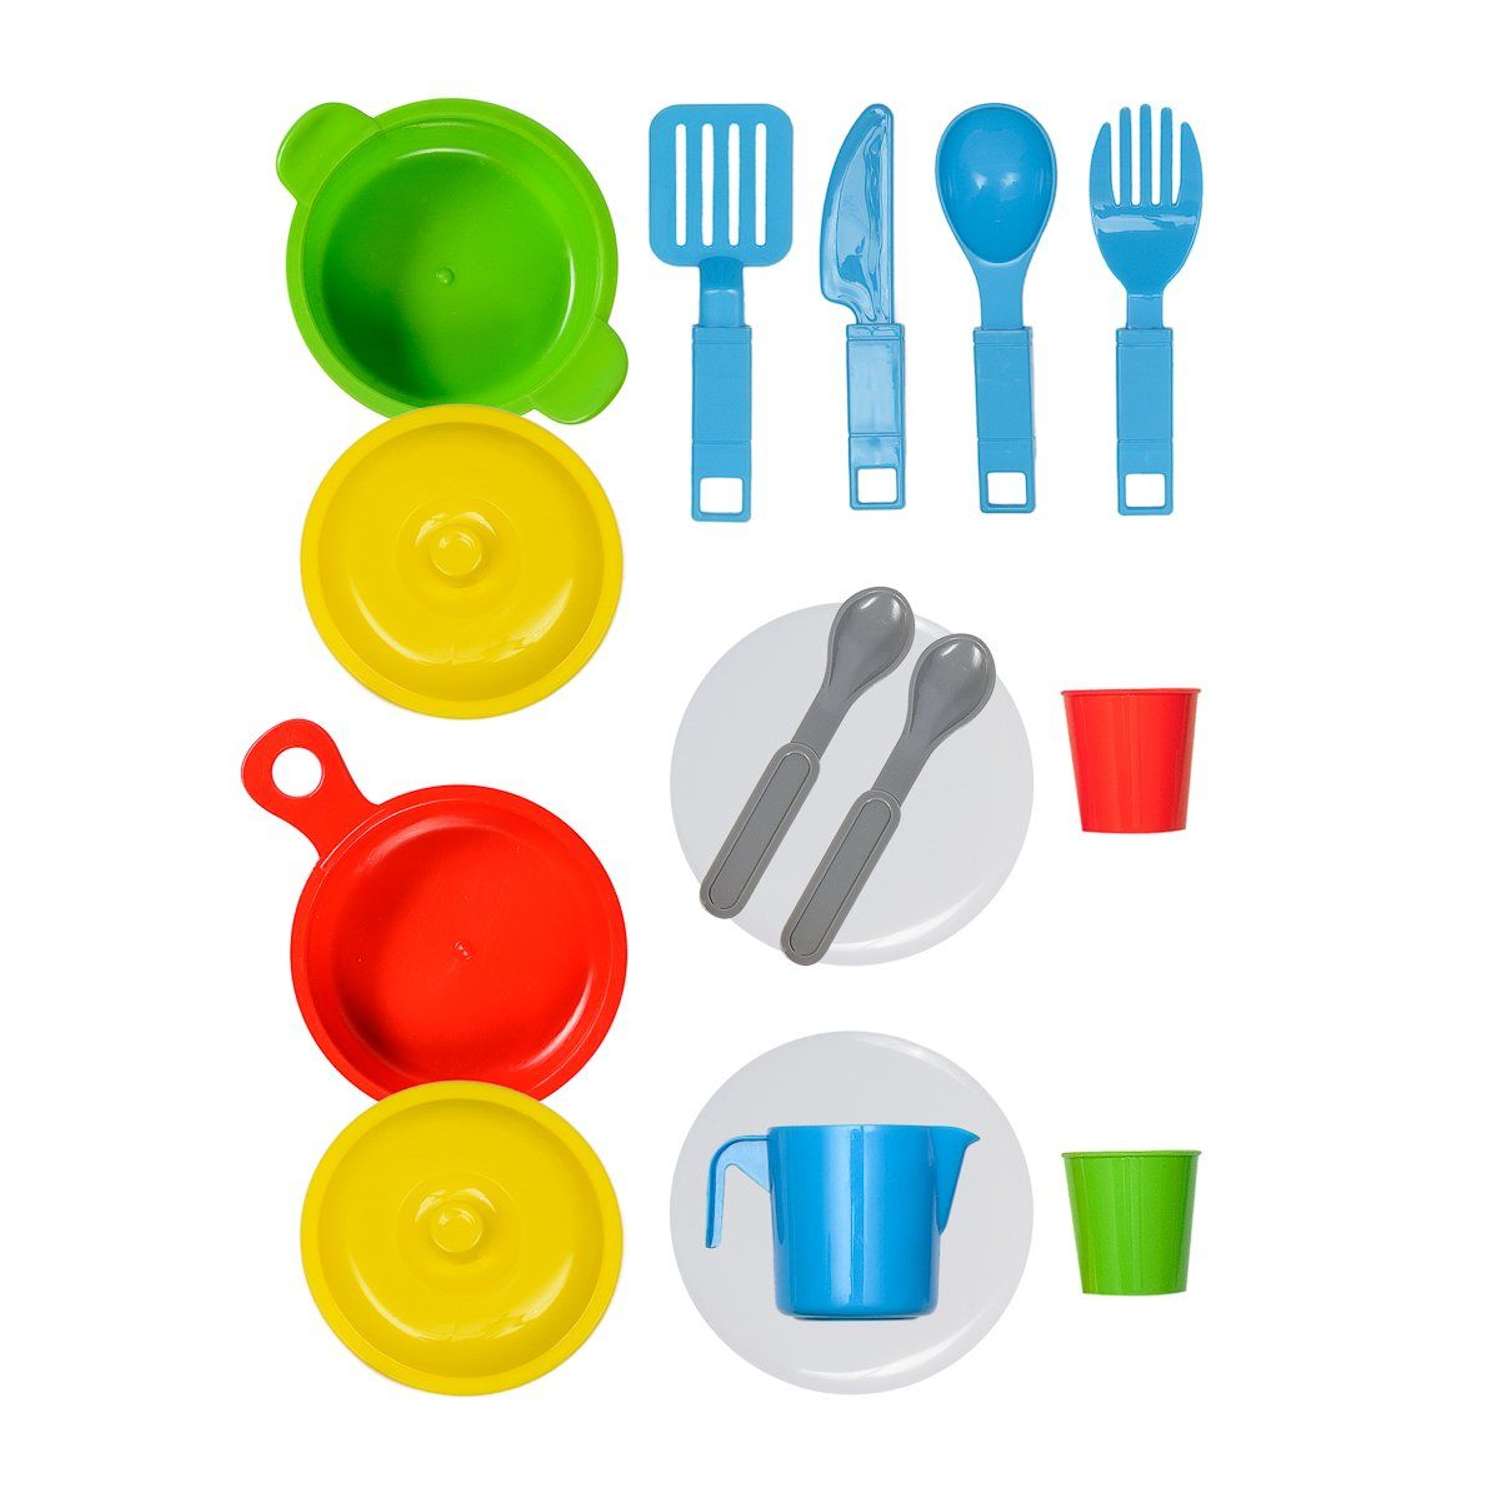 Игрушечная посуда детская Green Plast игровой набор для кухни 15 шт - фото 1